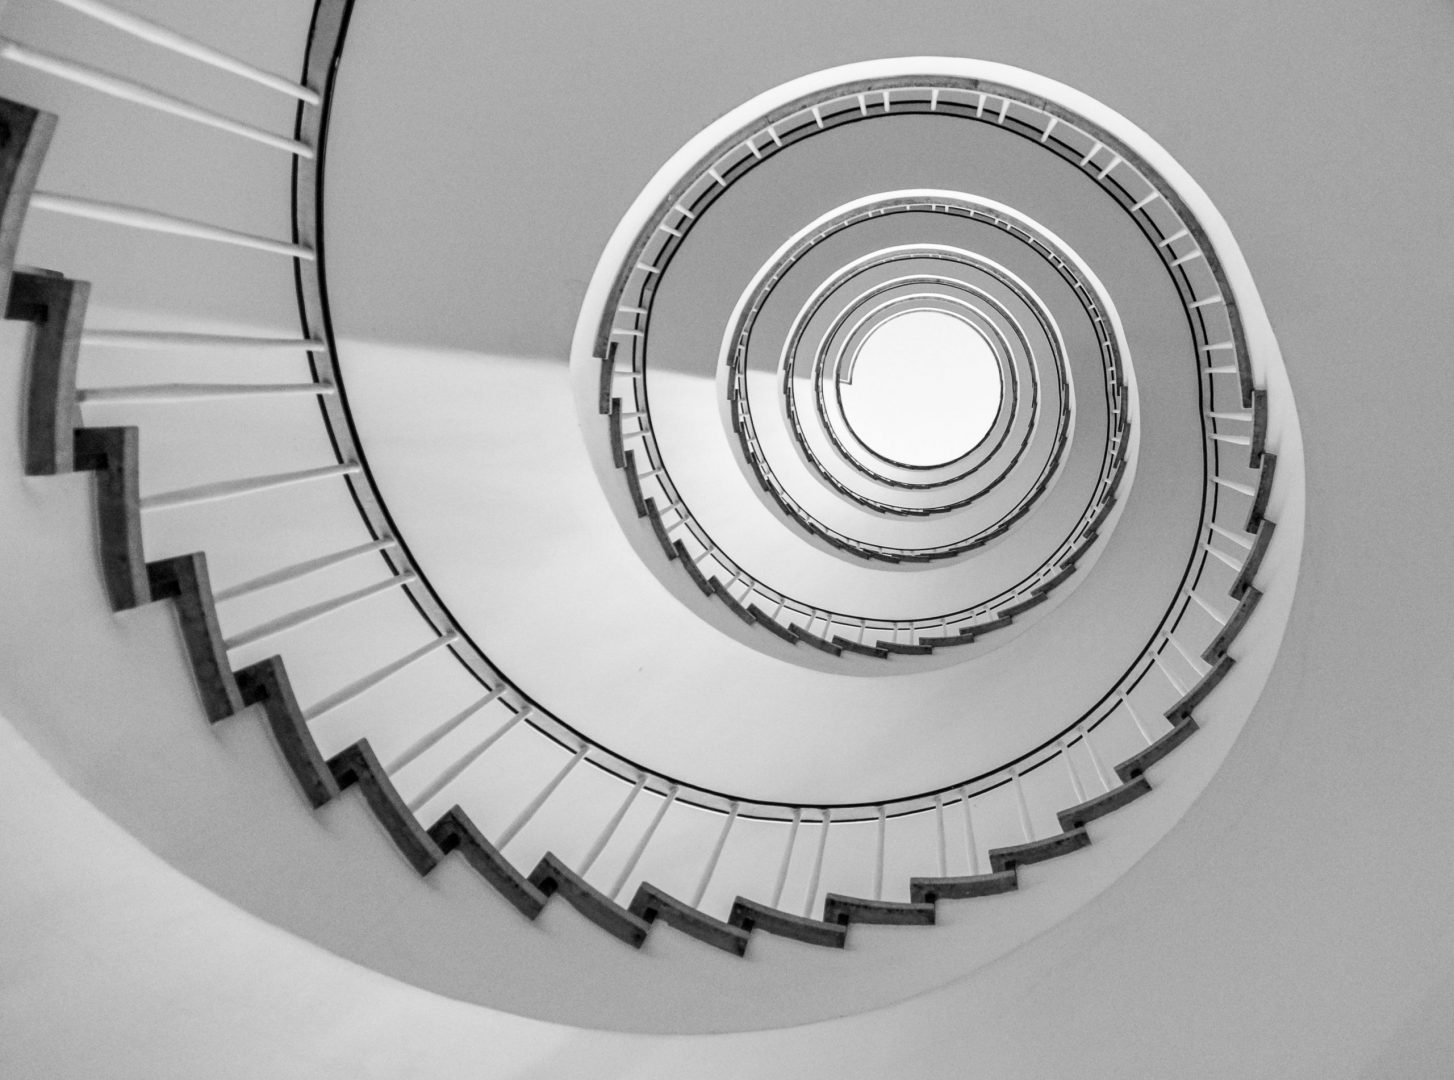 Abstract circular stairs